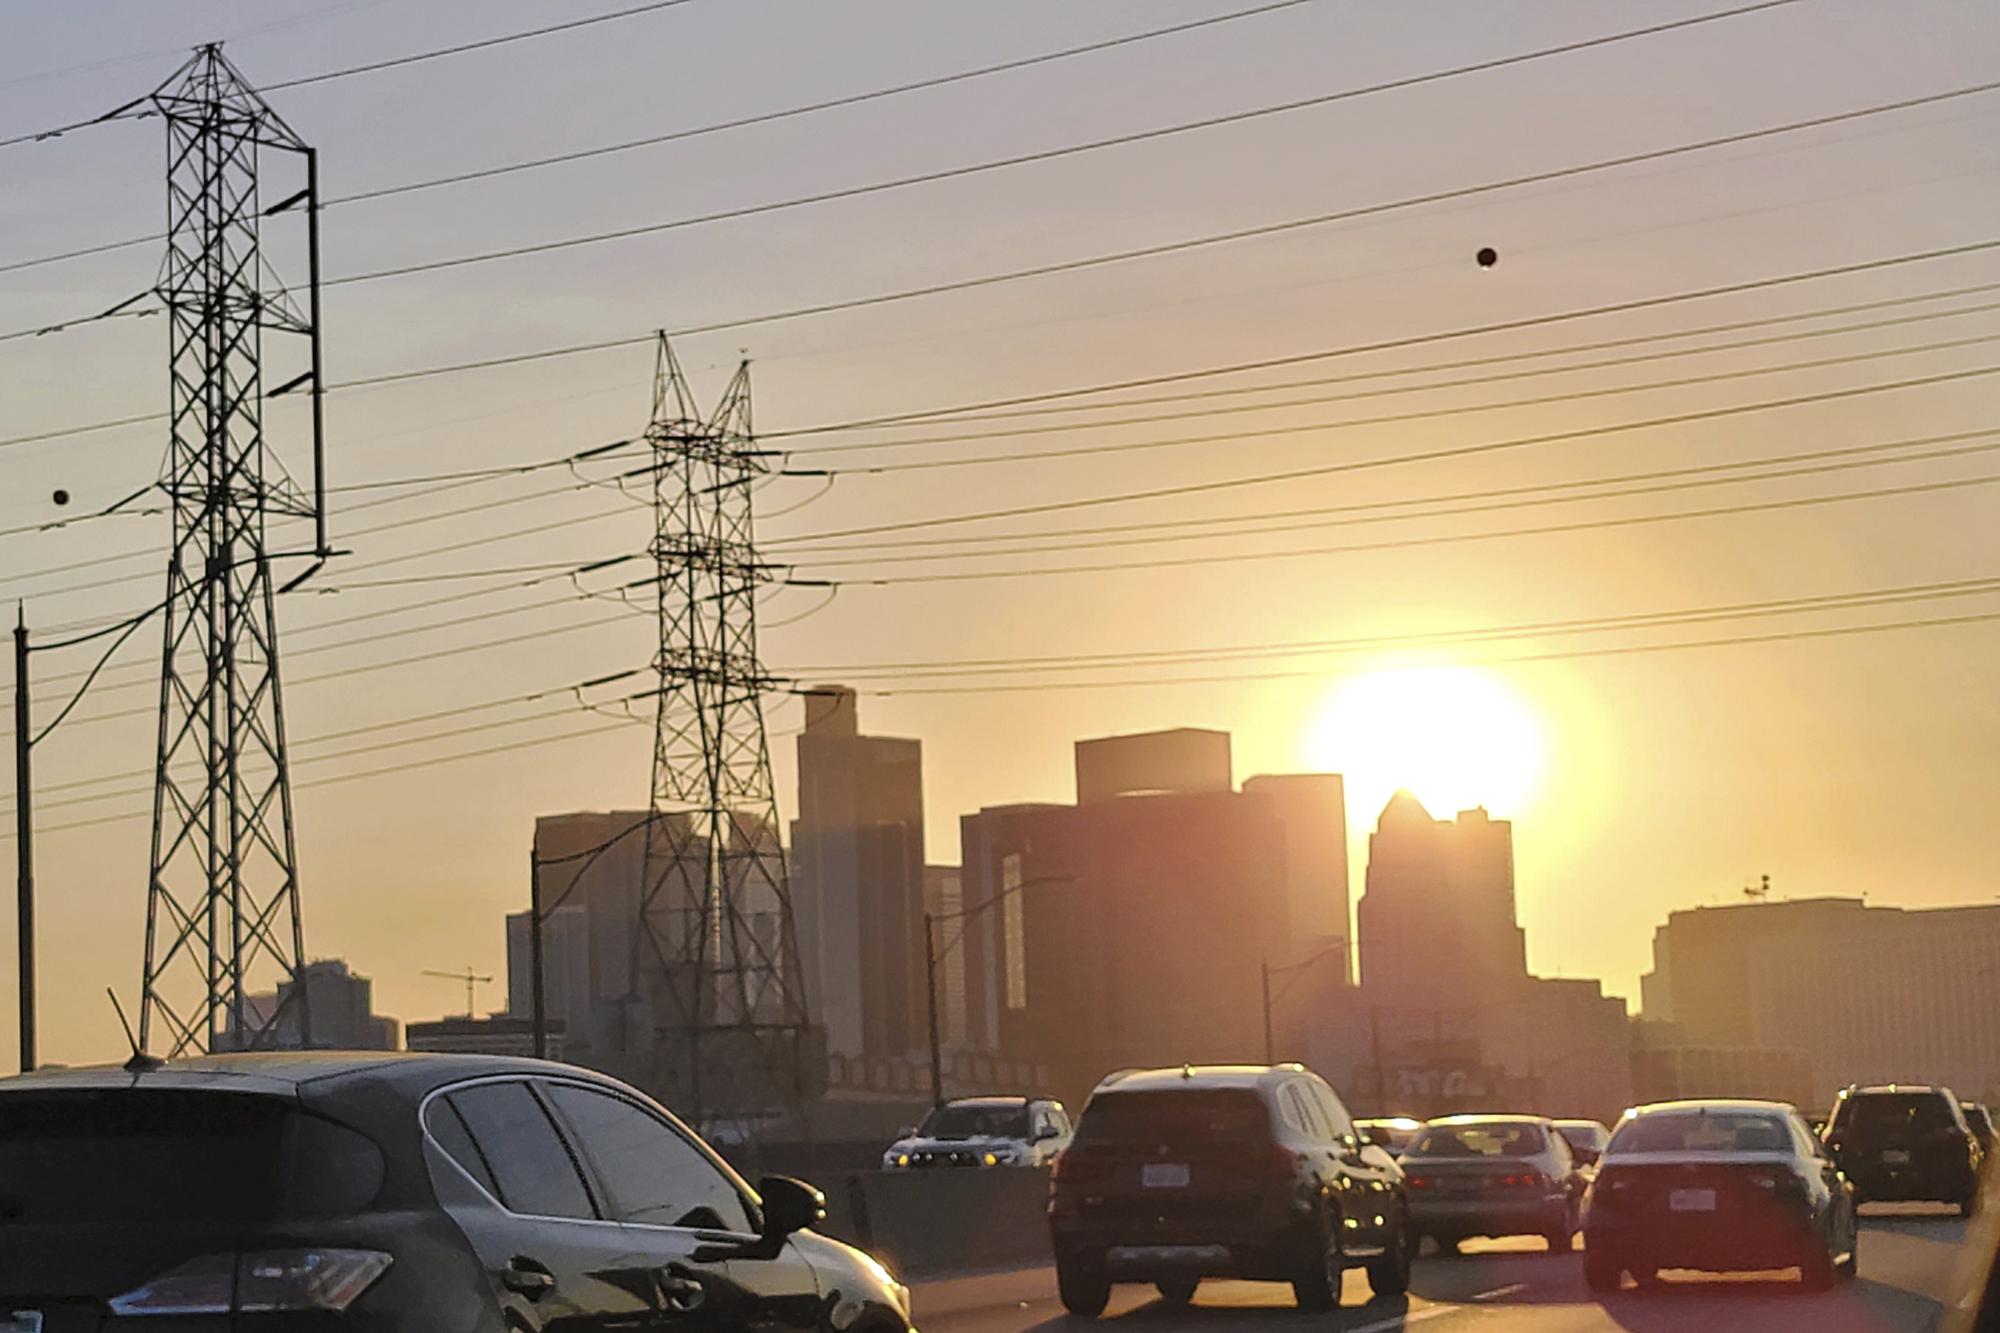 Les pics de chaleur en Californie font grimper les demandes d’électricité. [Keystone/AP Photo - Damian Dovarganes]